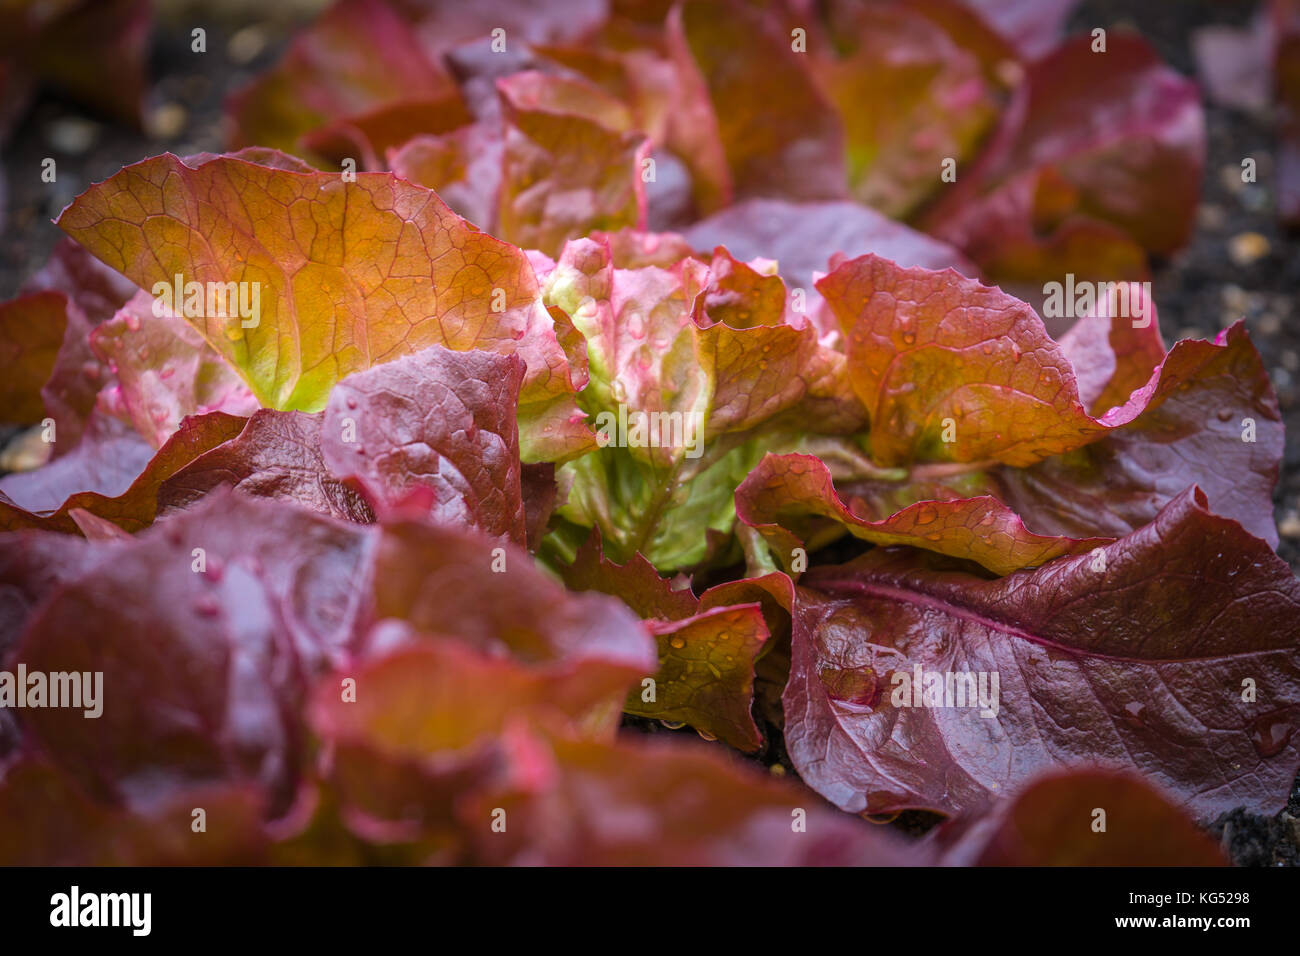 Rojo lechugas de hoja son un grupo de cultivares de lechuga con hojas rojas. Foto de stock